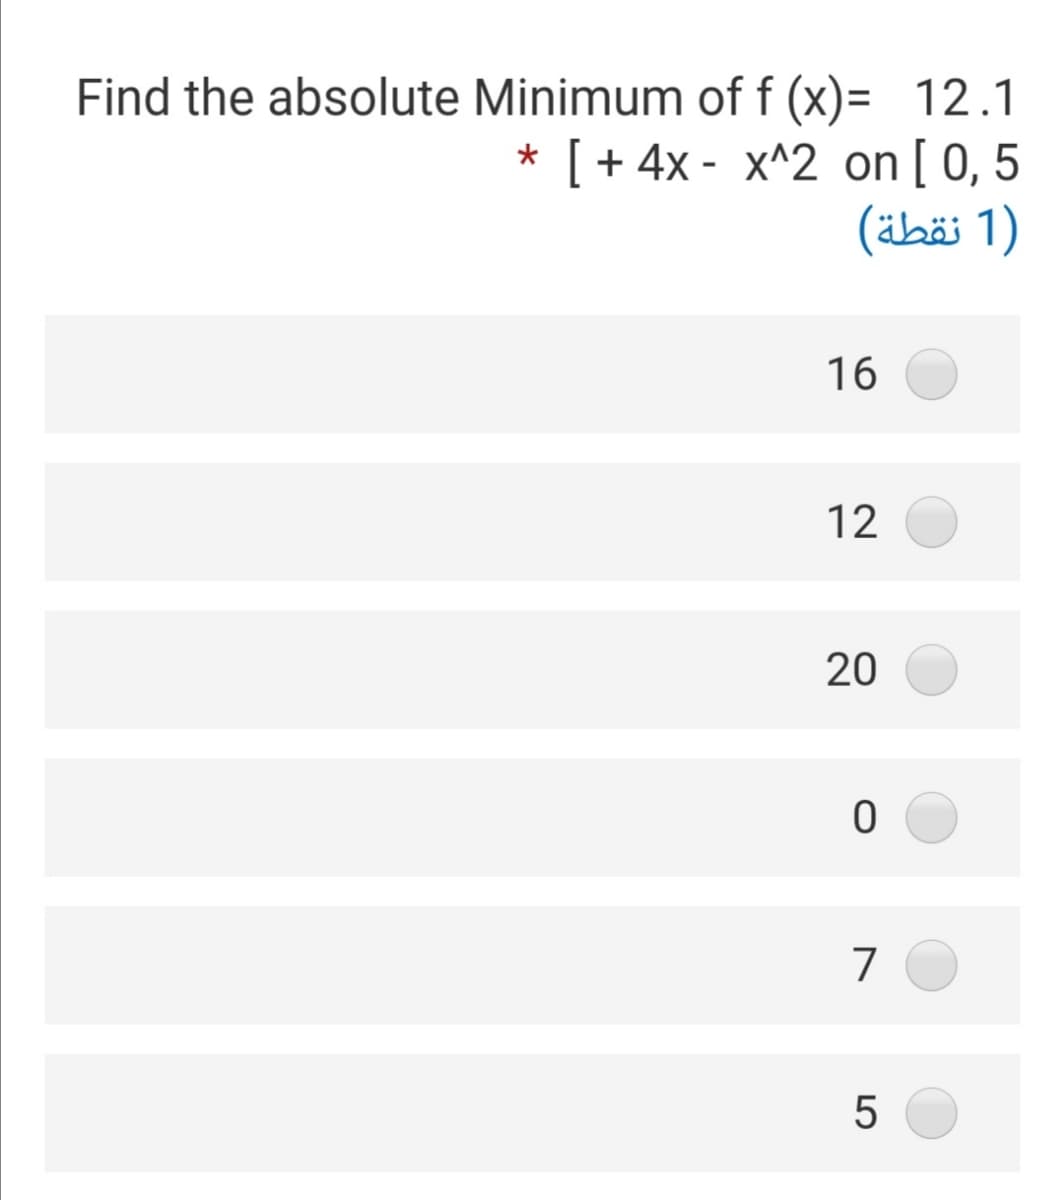 Find the absolute Minimum of f (x)= 12.1
* [ + 4x - x^2 on[0,5
(äbäi 1)
16
12
20
7
